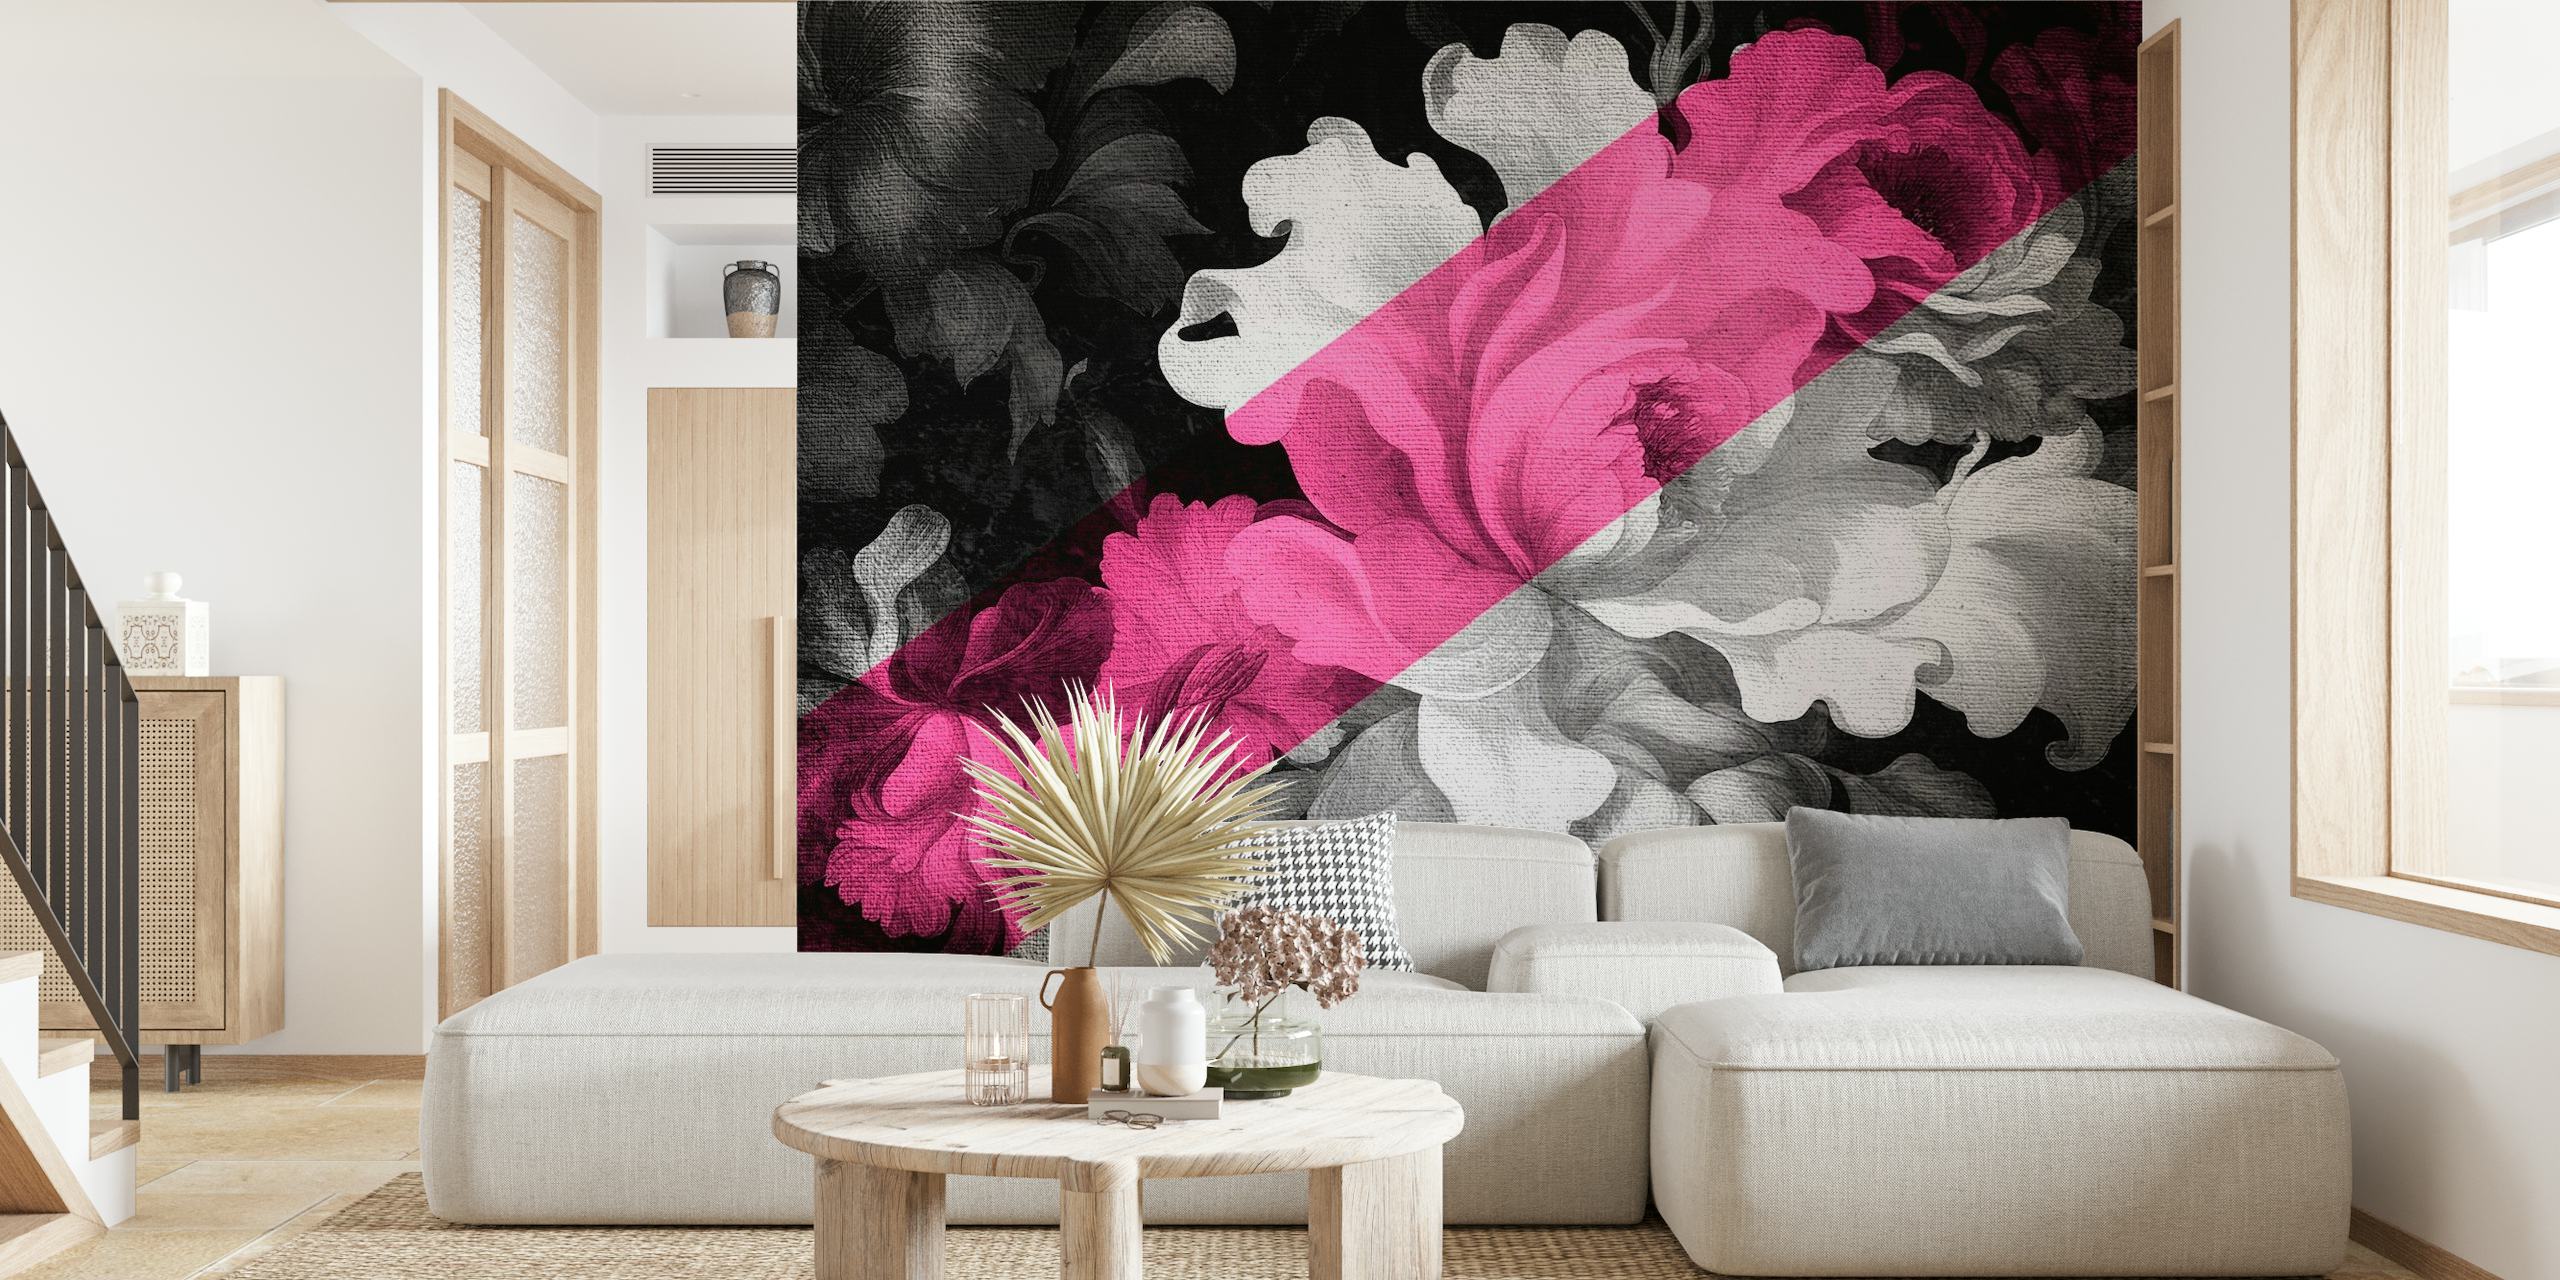 Mural de parede floral monocromático e rosa que combina estilos de arte pop renascentista e moderna